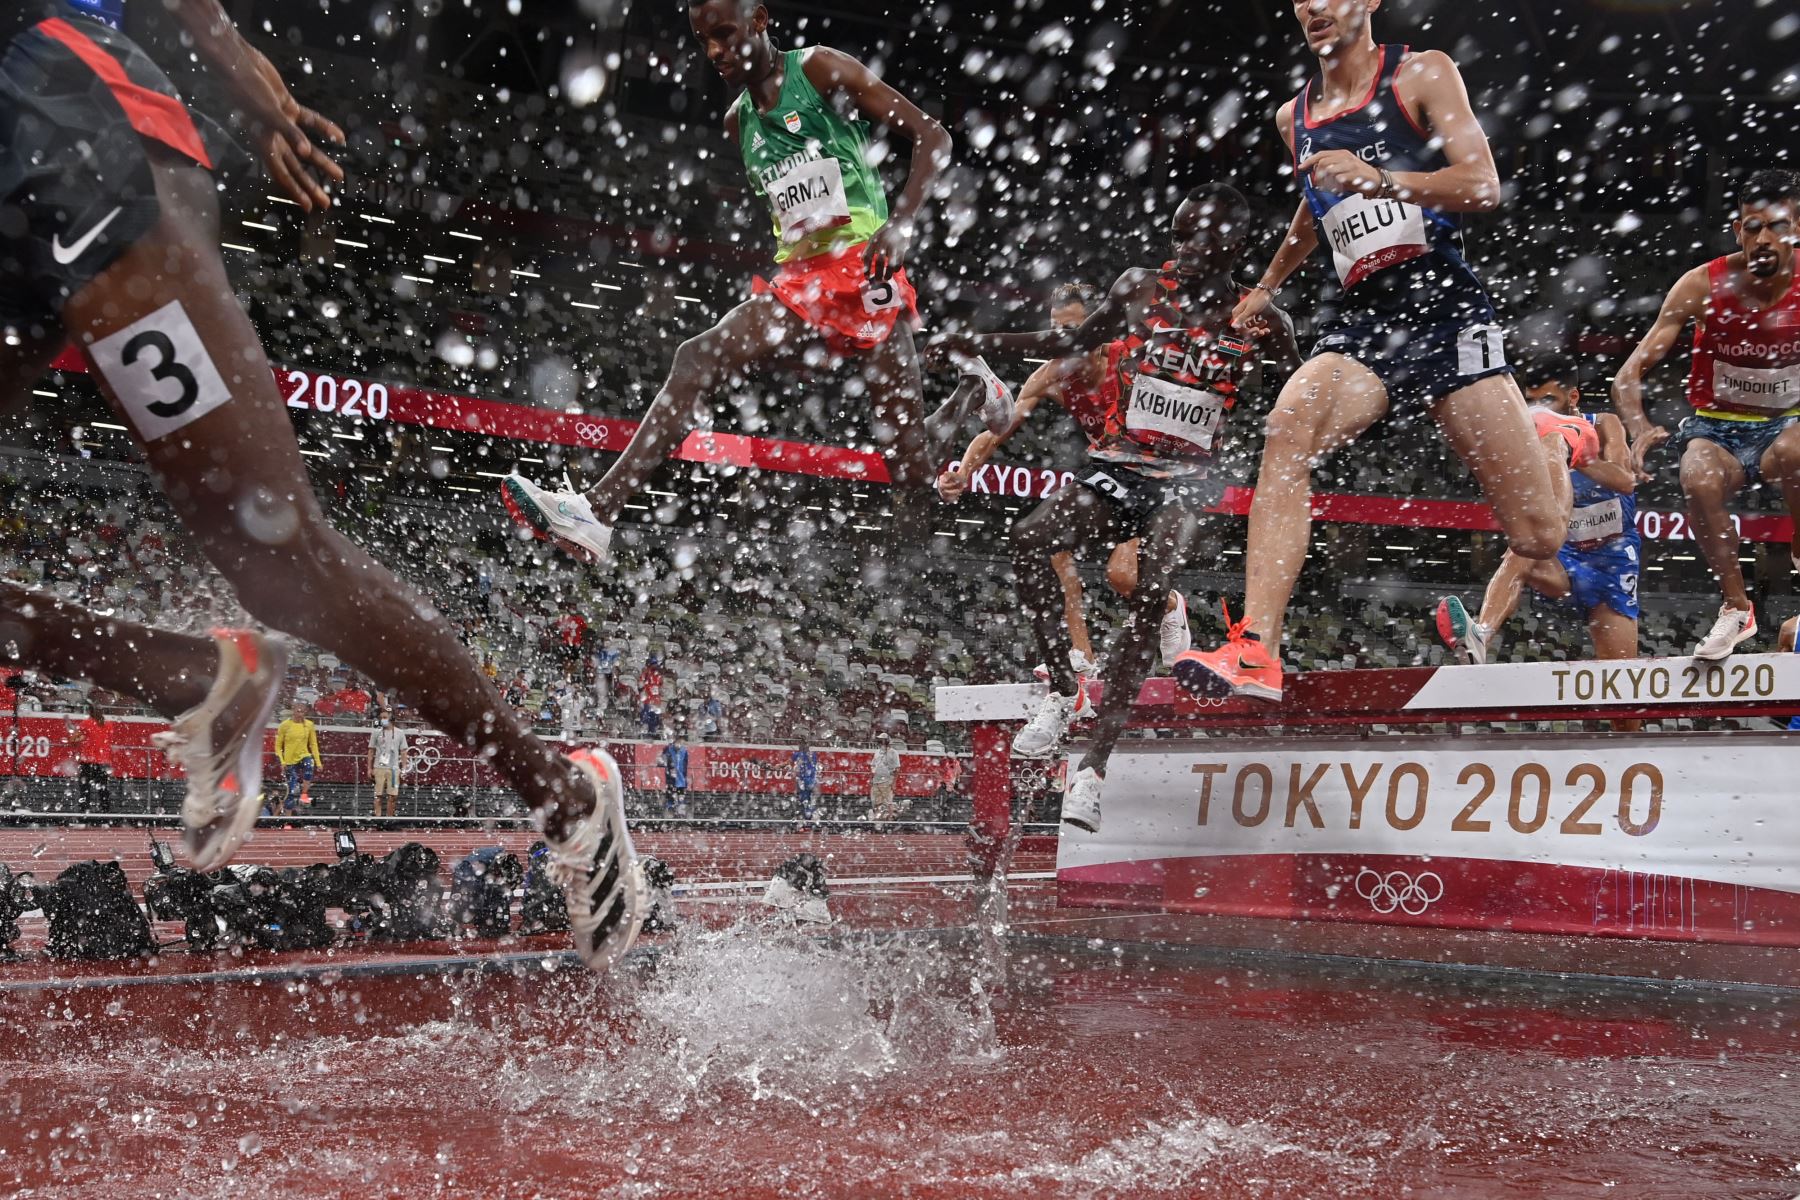 Los atletas compiten en la final masculina de carrera de obstáculos de 3000 m durante los Juegos Olímpicos de Tokio 2020 en el Estadio Olímpico de Tokio.
Foto: AFP